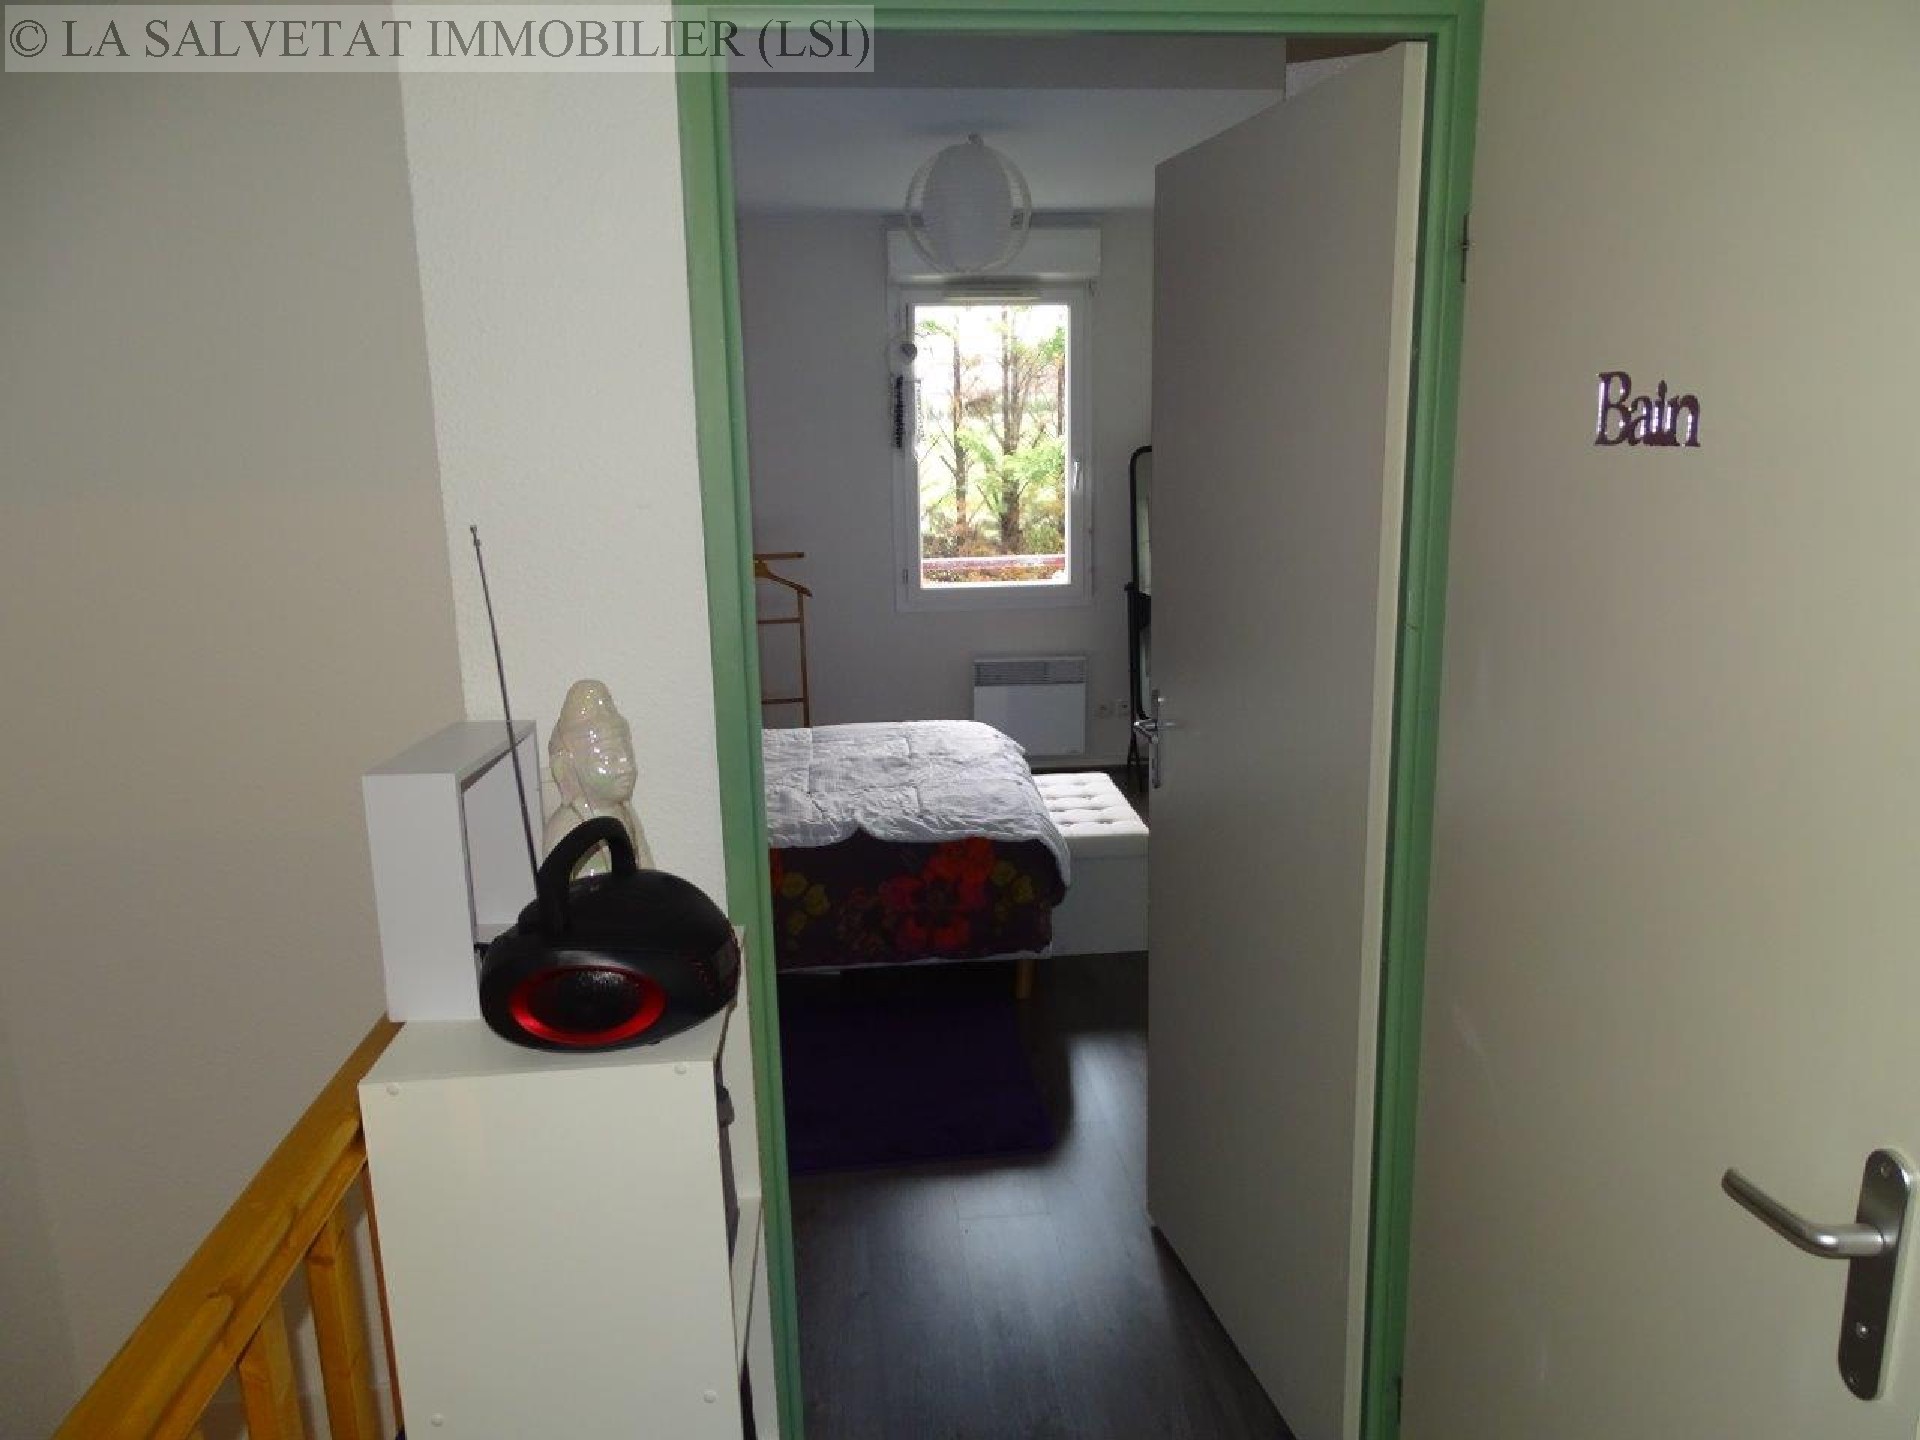 Vente appartement - ST LYS<br>49 m², 2 pièces